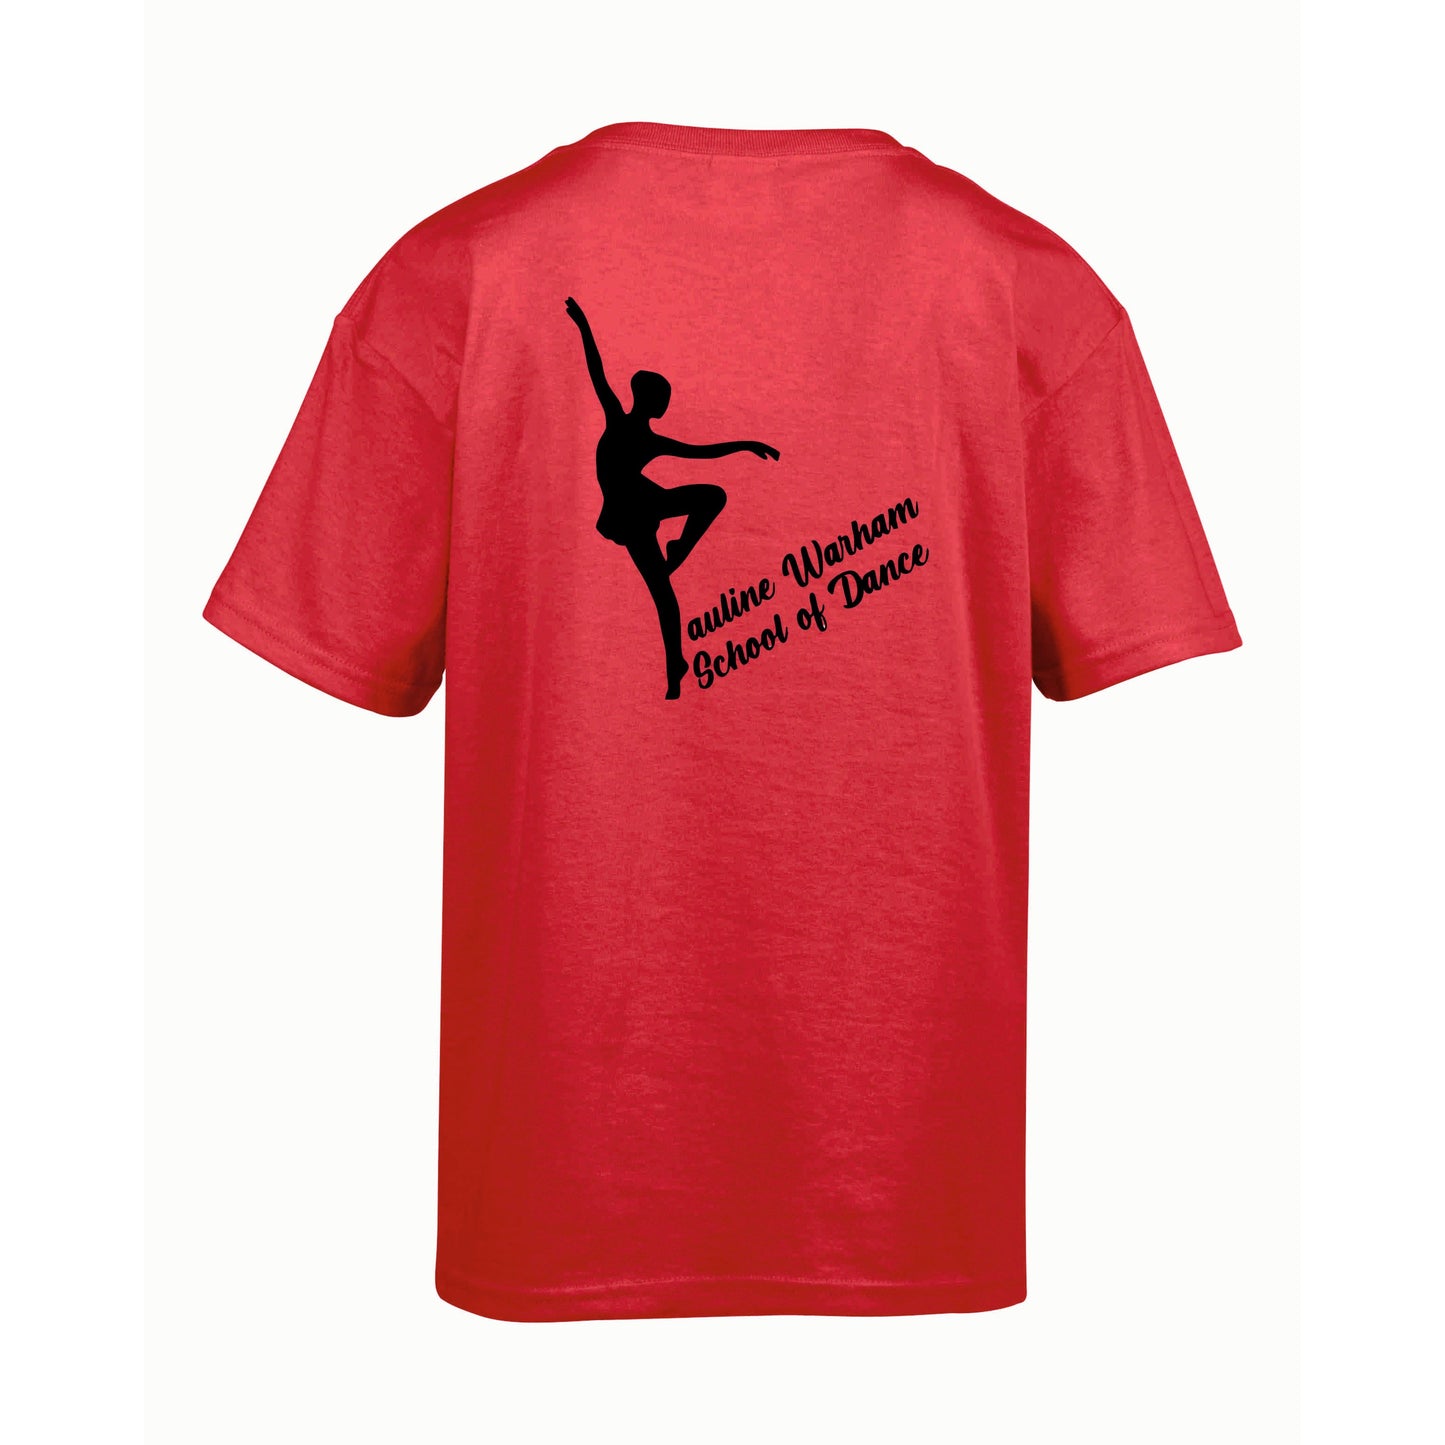 Pauline Warham School of Dance - T-Shirt